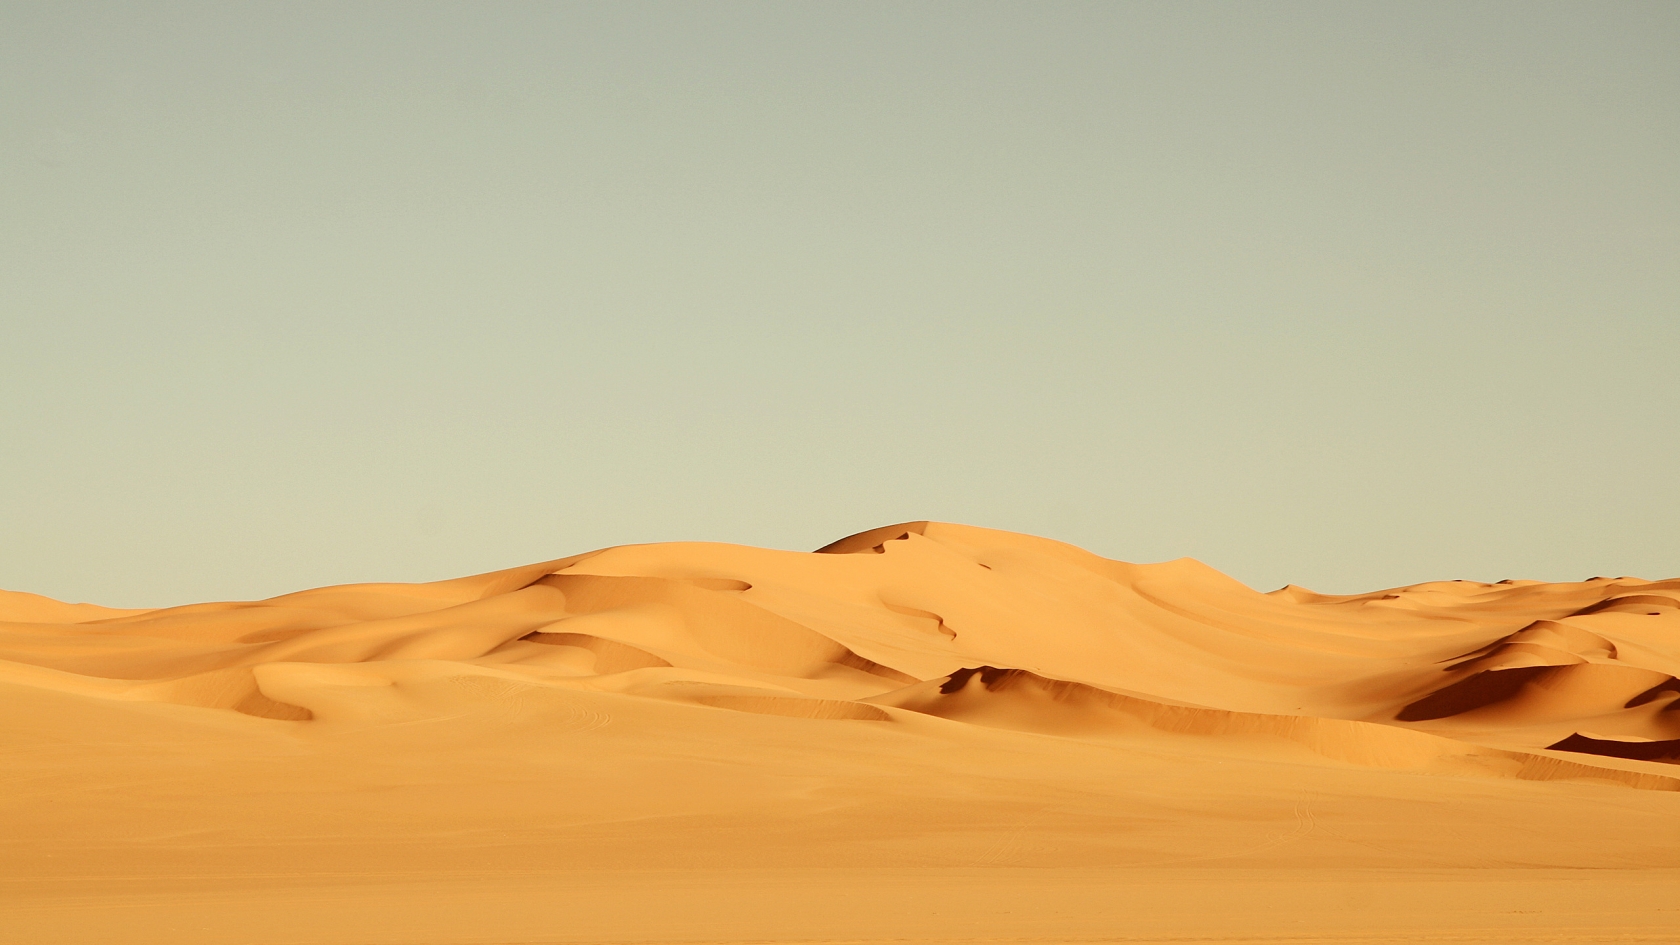 Sahara Desert for 1680 x 945 HDTV resolution